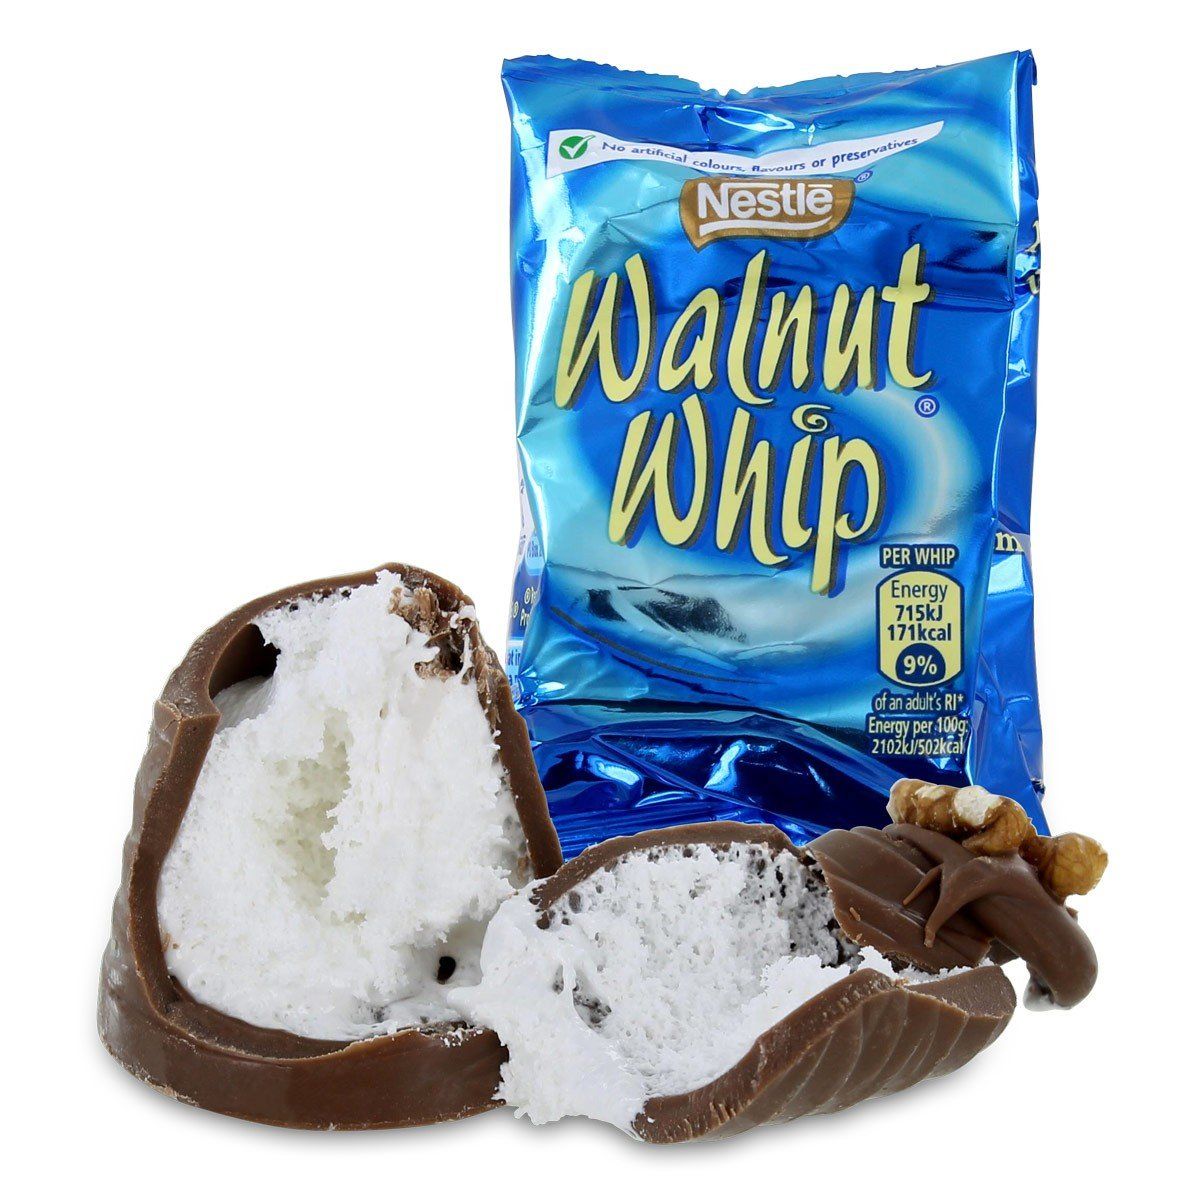 Nestle Walnut Whip Uk Plus Candy 